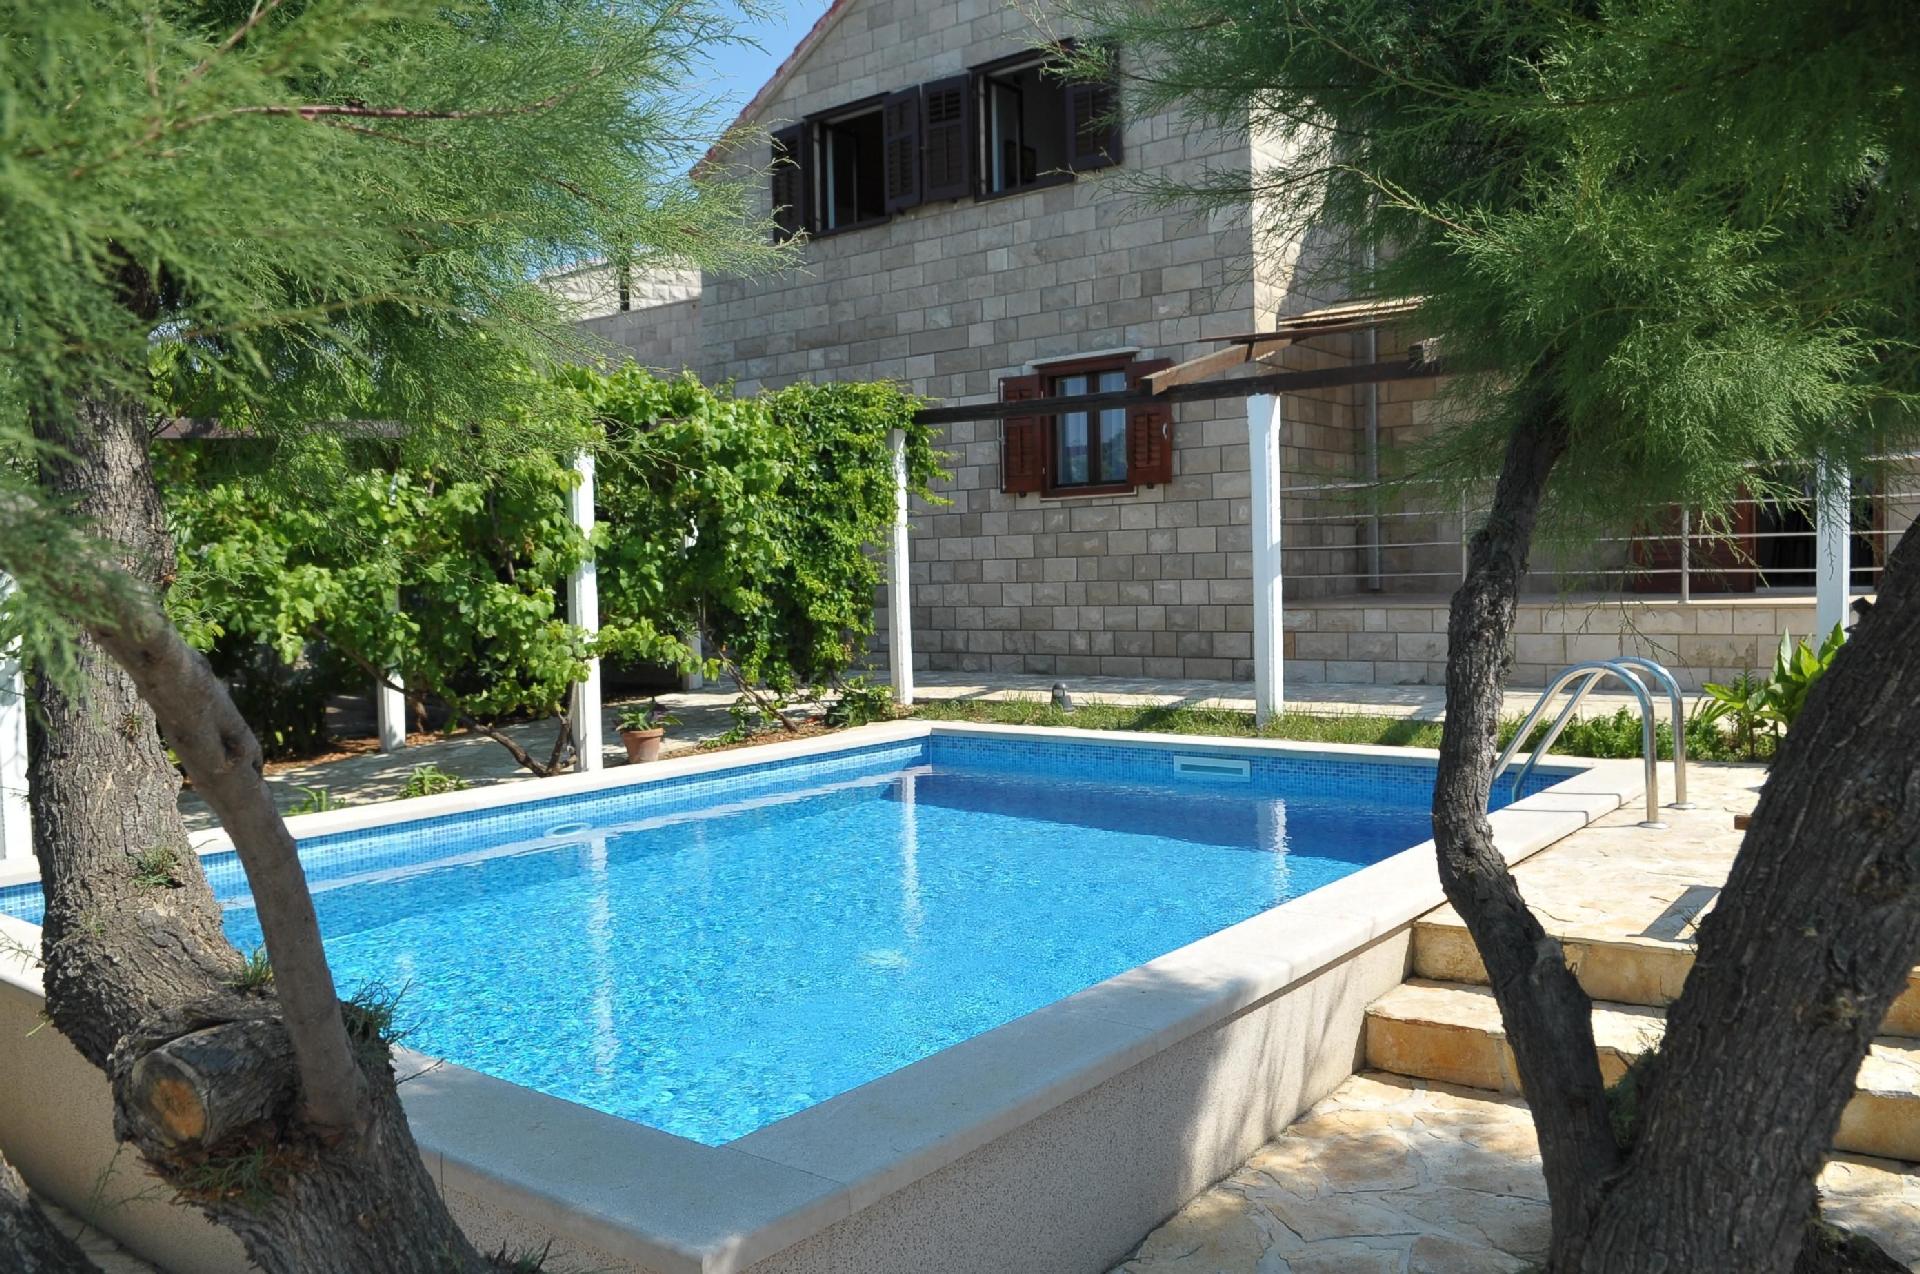 Großes Ferienhaus mit Garten eigenem Pool Sauna und Fitnessraum sowie privatem Strand direkt am Meer gelegen